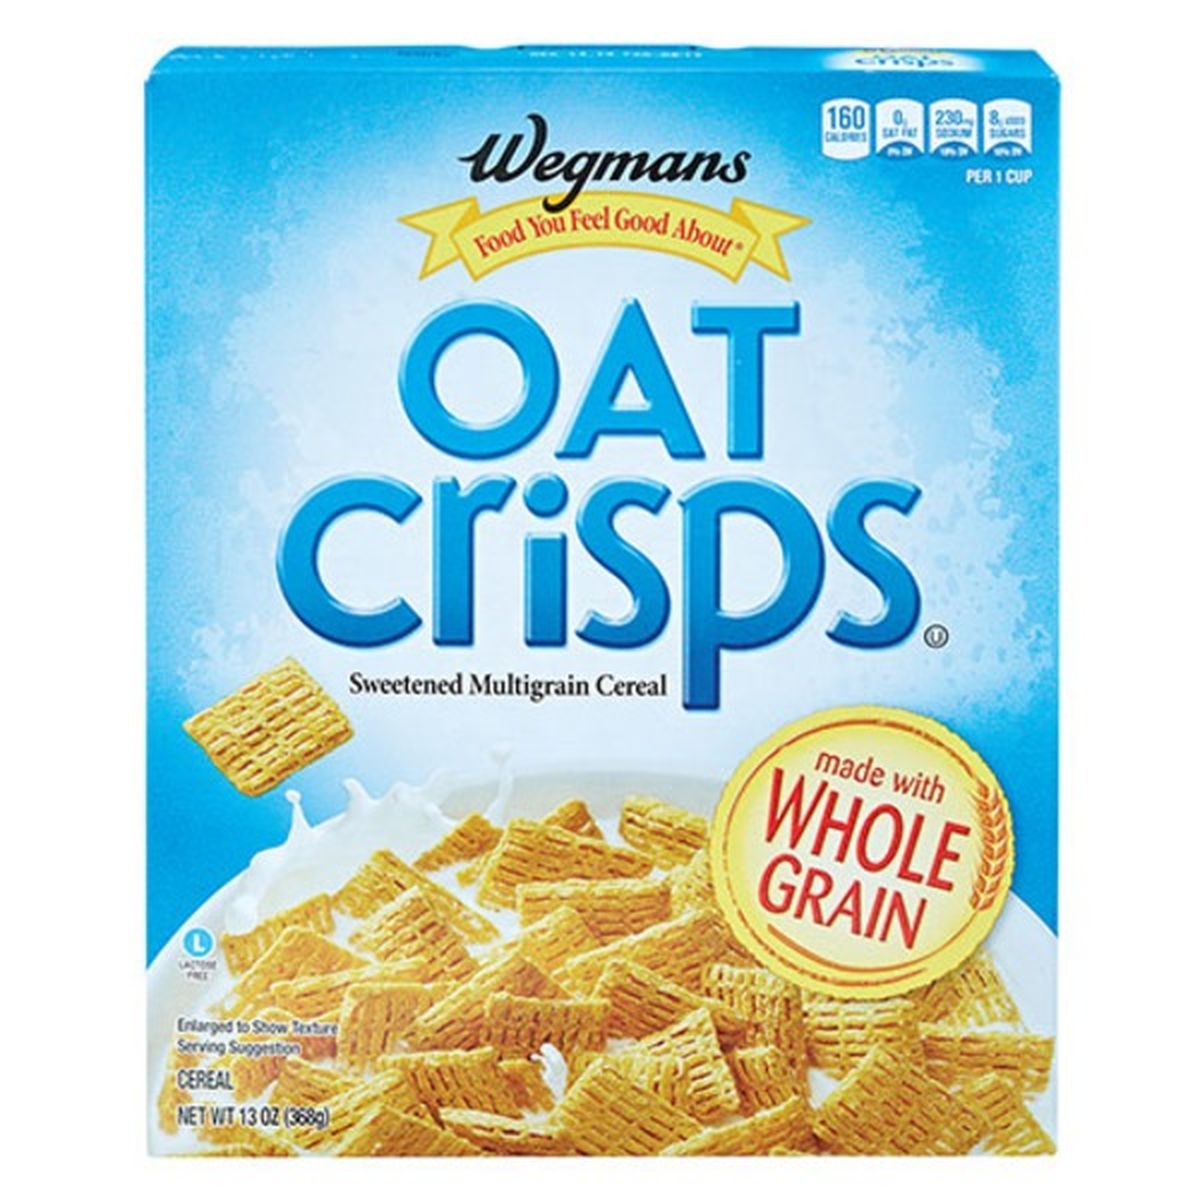 Calories in Wegmans Oat Crisps Multigrain Cereal